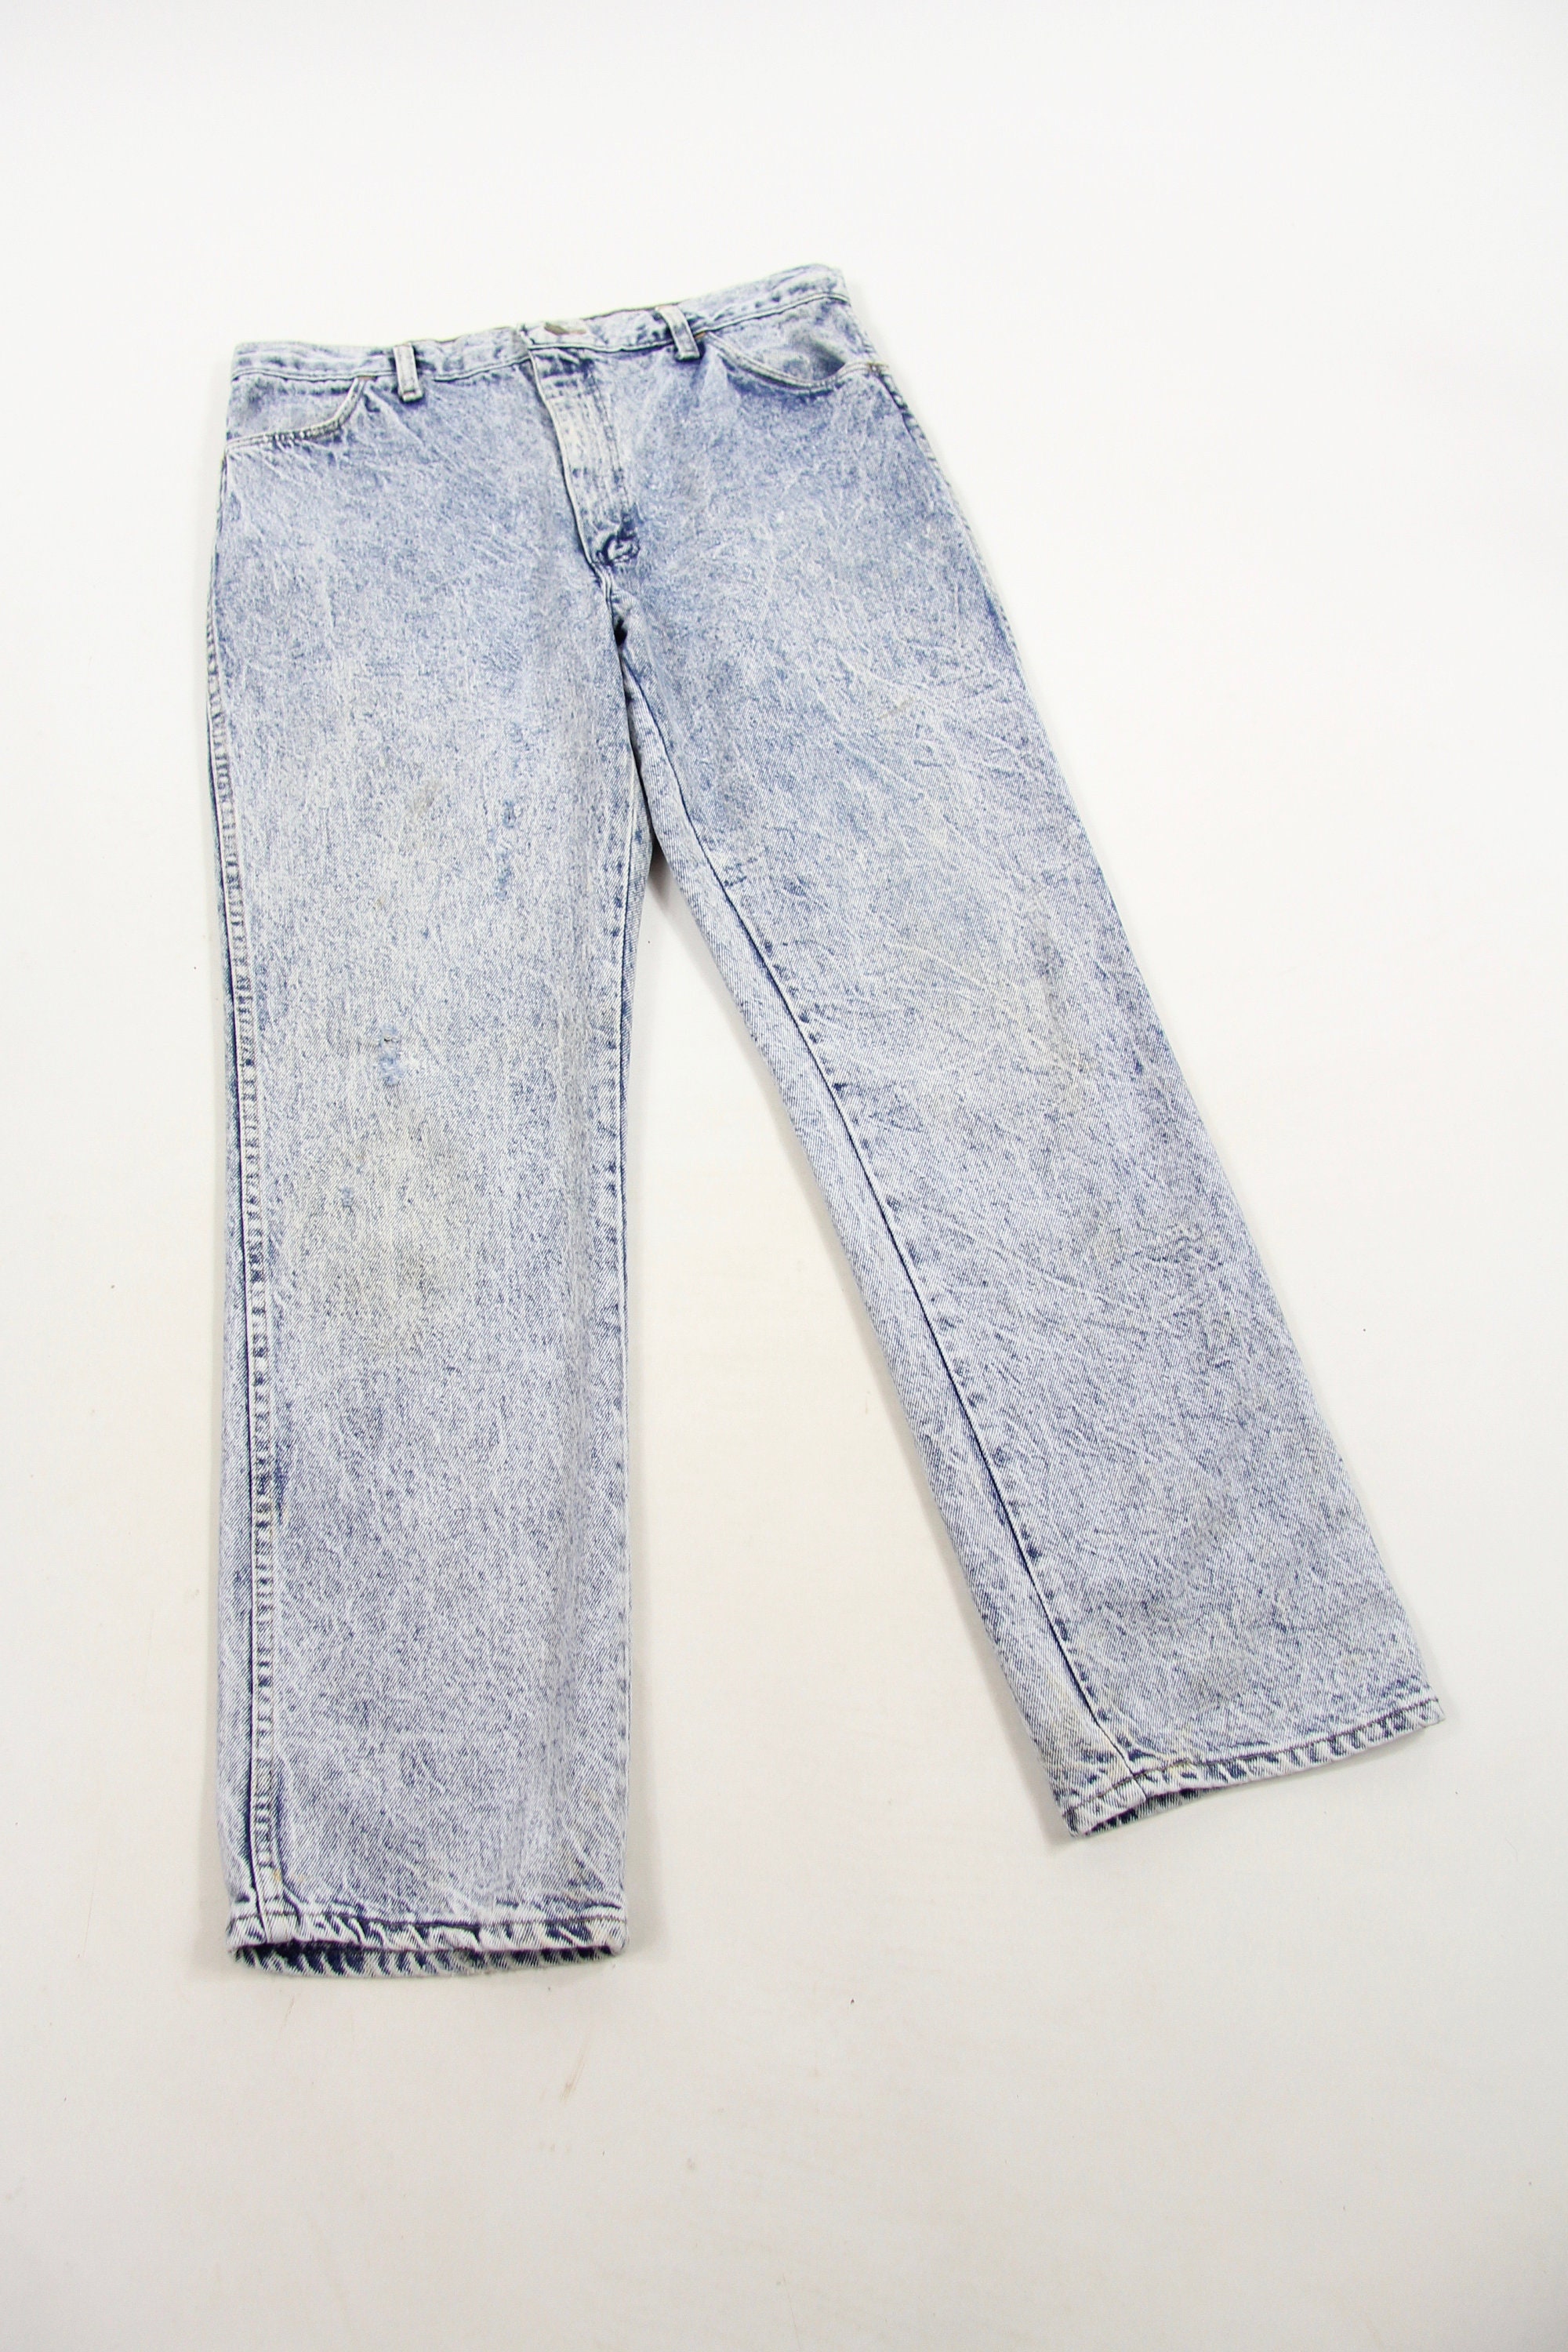 Men's Acid Wash Jeans Distressed Vintage Denim Jeans by Rustler Size 34 ...